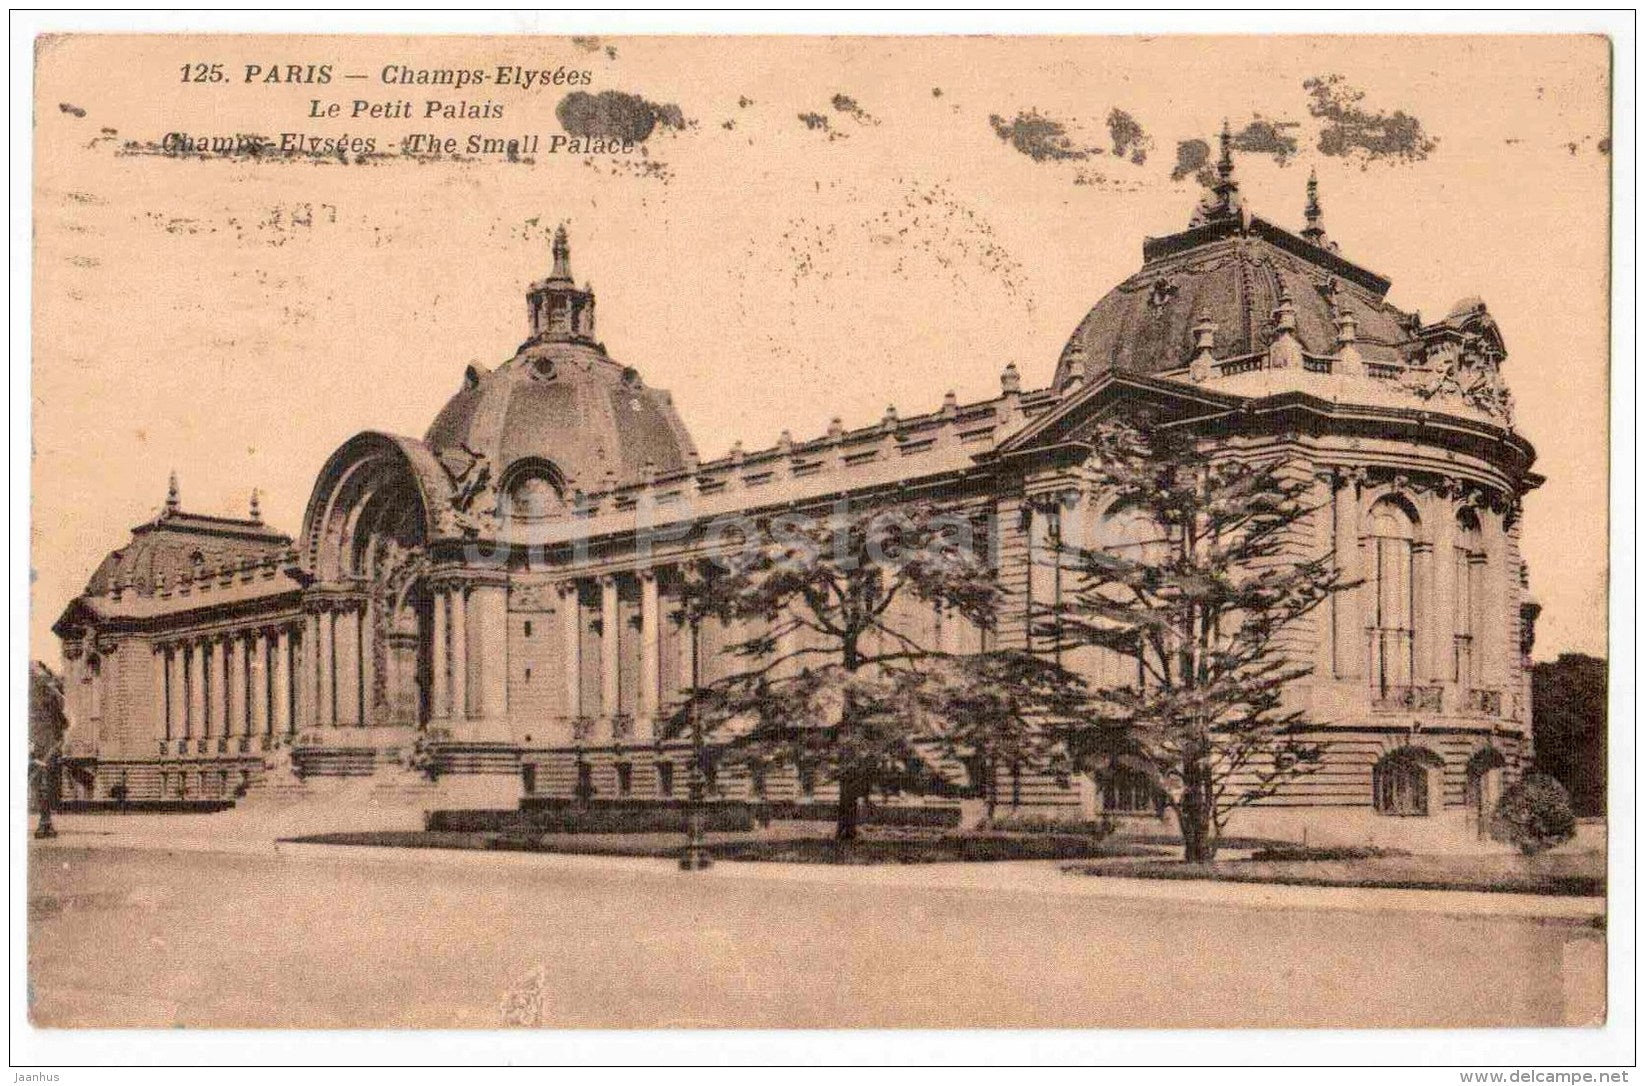 Champs-Elysees - Le Petit Palais - palace - 125 - Paris - France - sent from France Paris to to Estonia Tallinn 1932 - JH Postcards